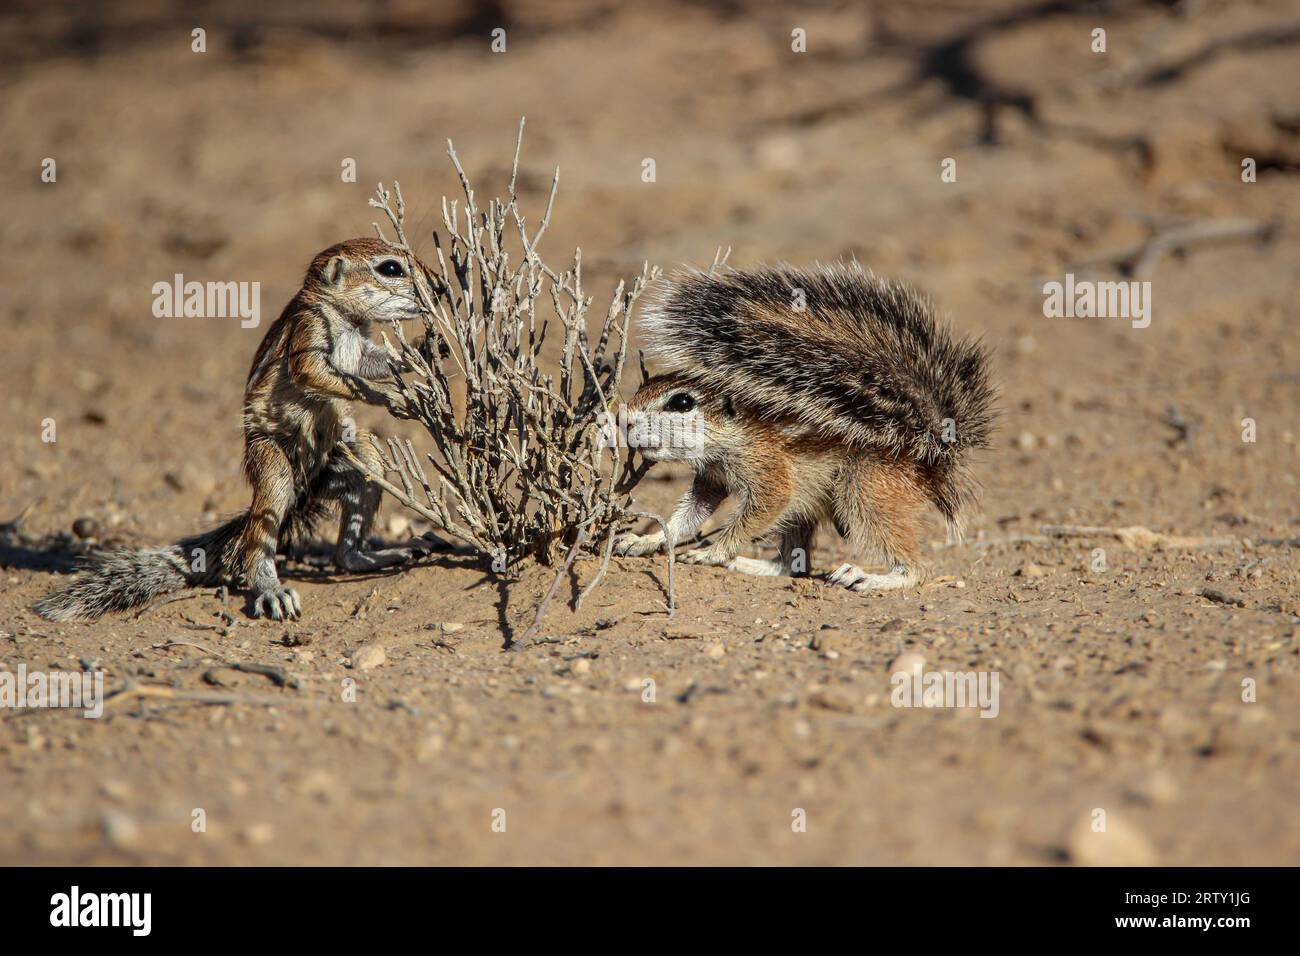 Kap Ground Eichhörnchen (Geoscirus inauris), Kgalagadi, Kalahari, Südafrika Stockfoto